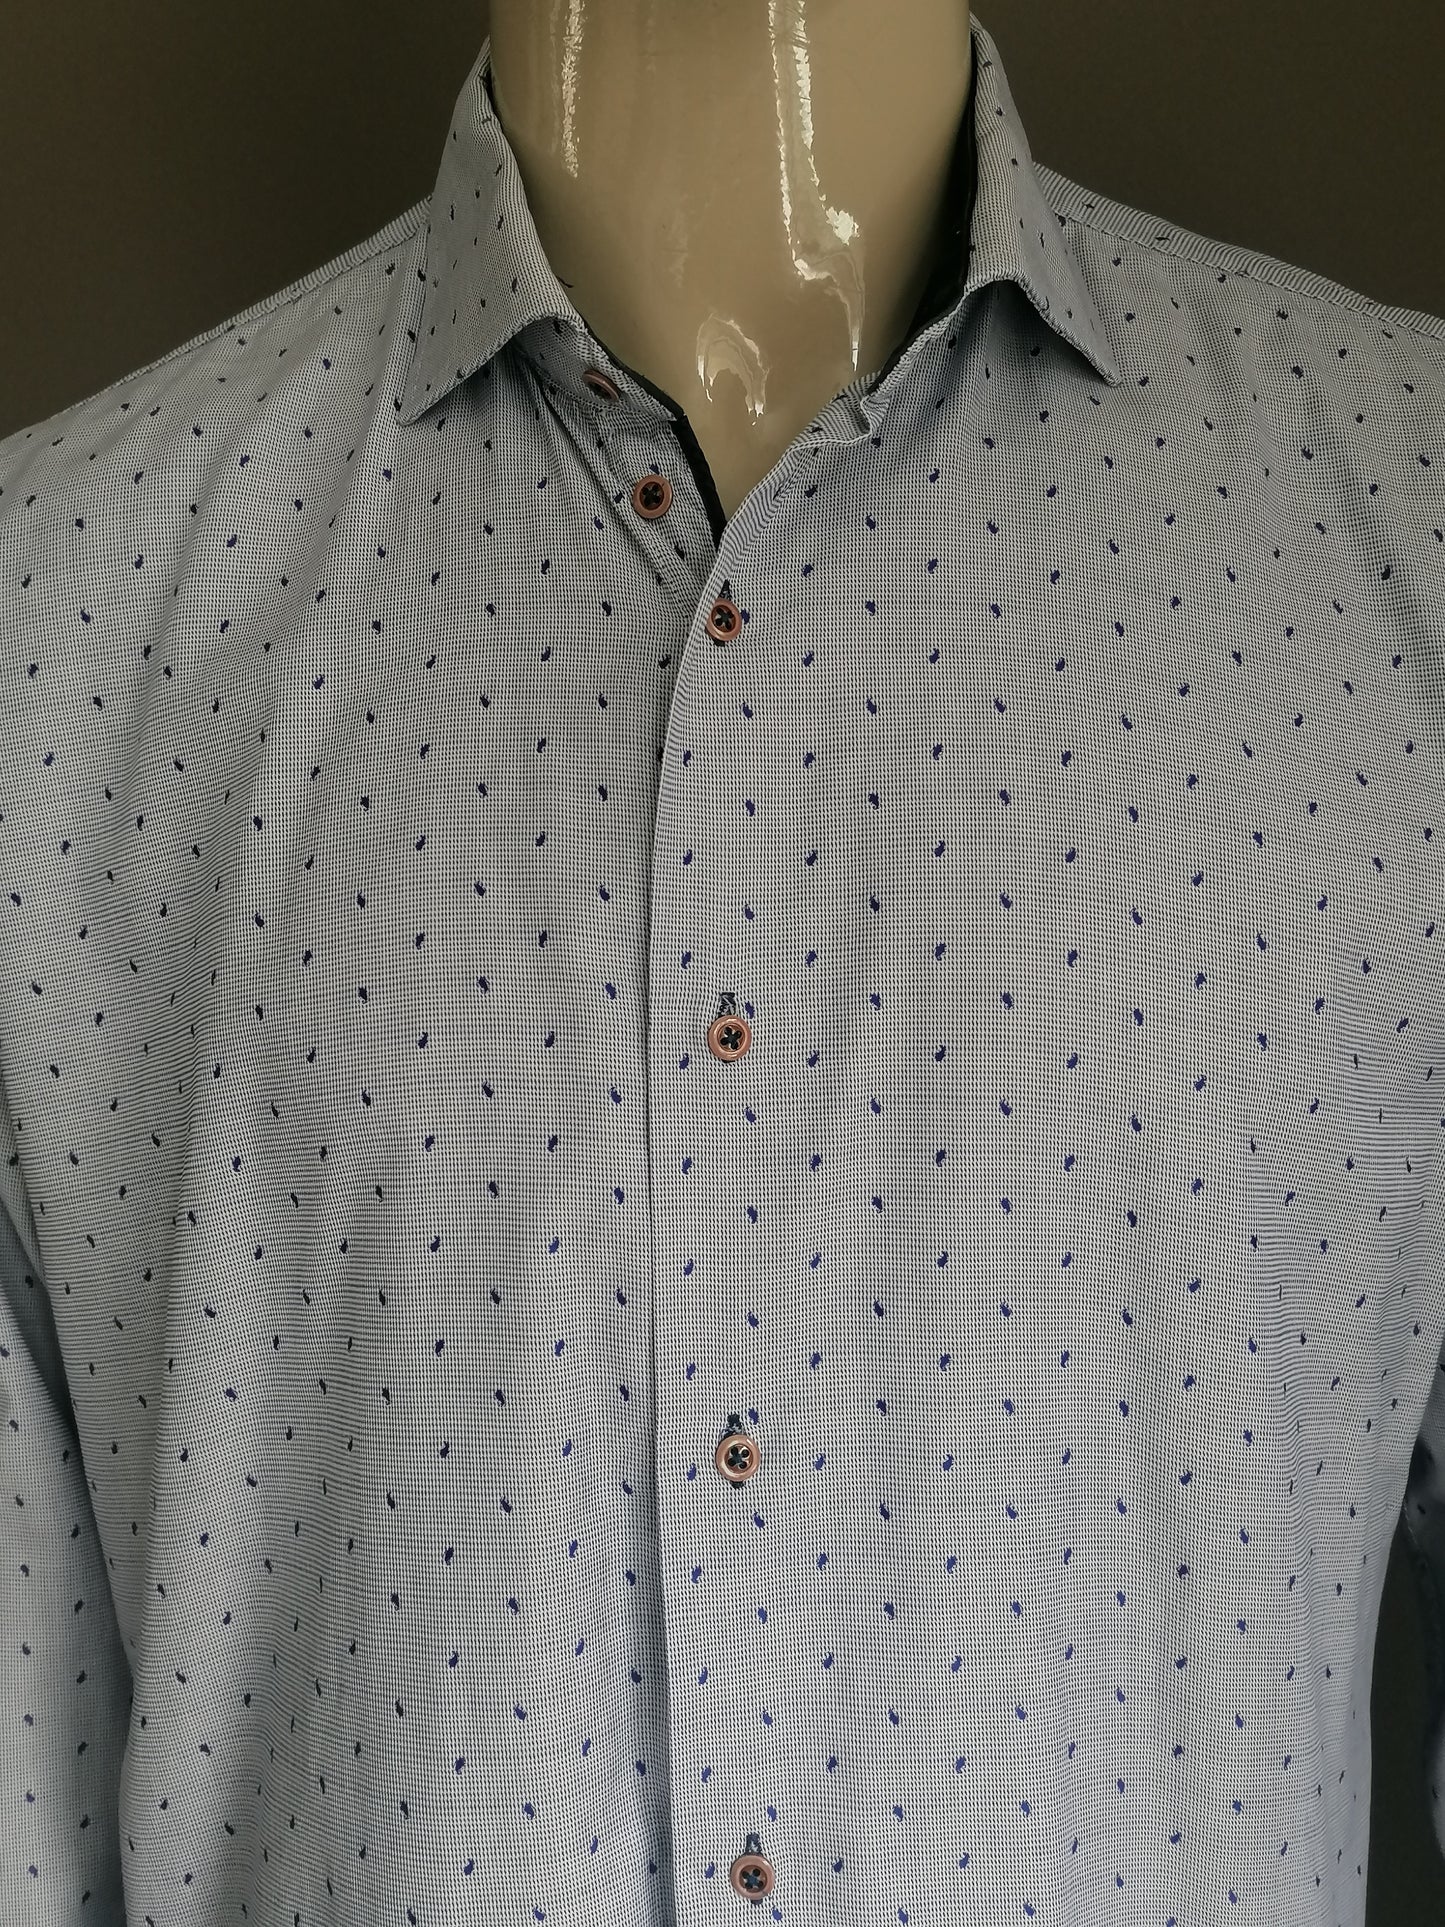 Marco Manzini shirt. Blue white print. Size XL.